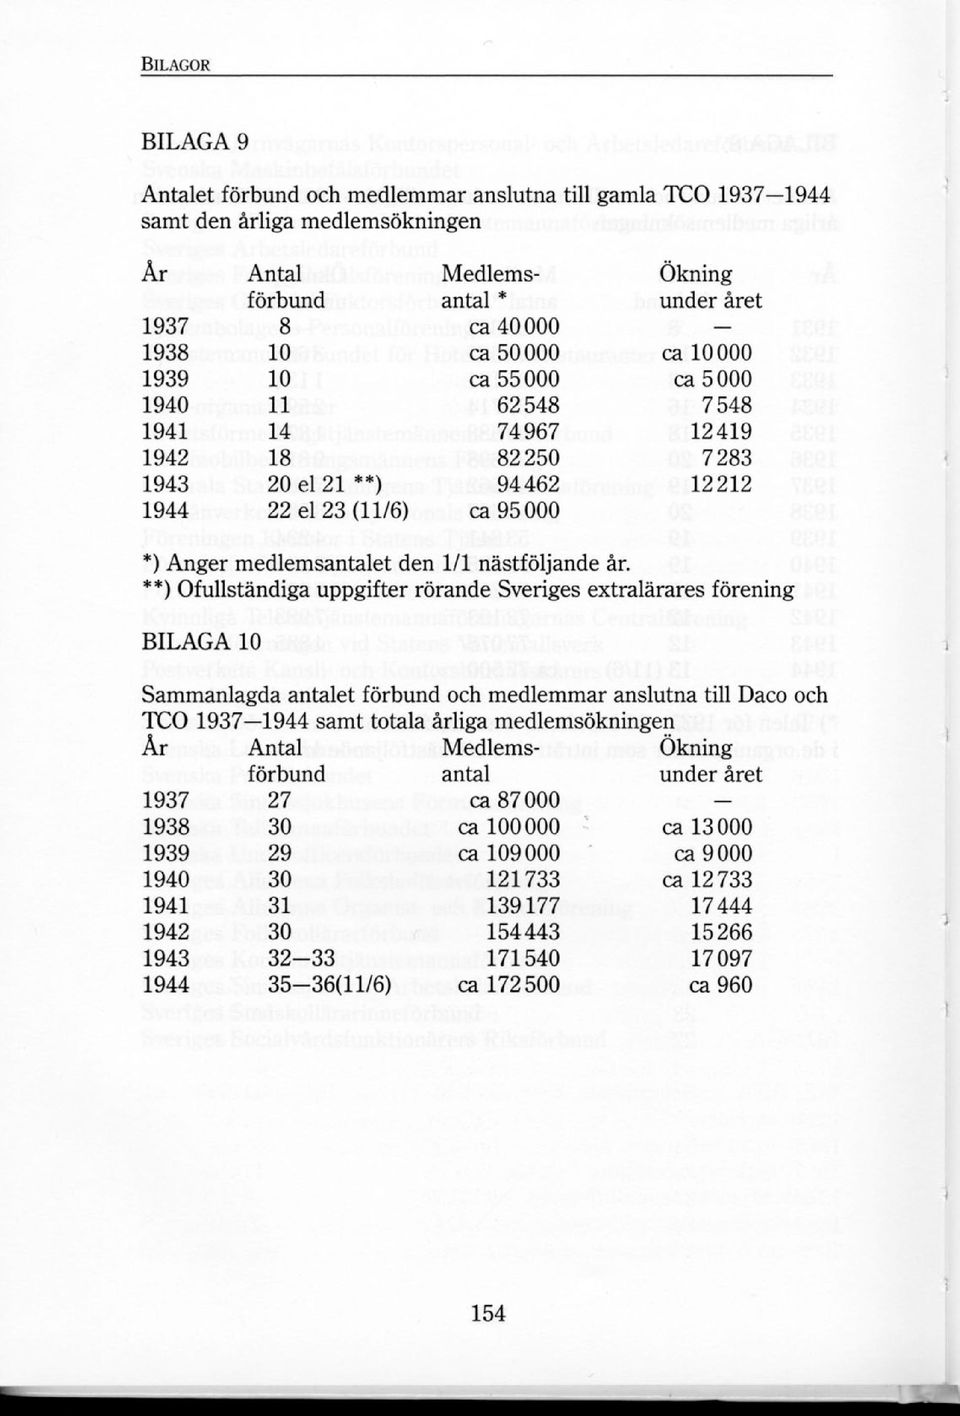 **) Ofullständiga uppgifter rörande Sveriges extralärares förening BILAGA 10 Sammanlagda antalet förbund och medlemmar anslutna till Daco och TCO 1937 1944 samt totala årliga medlemsökningen År Antal